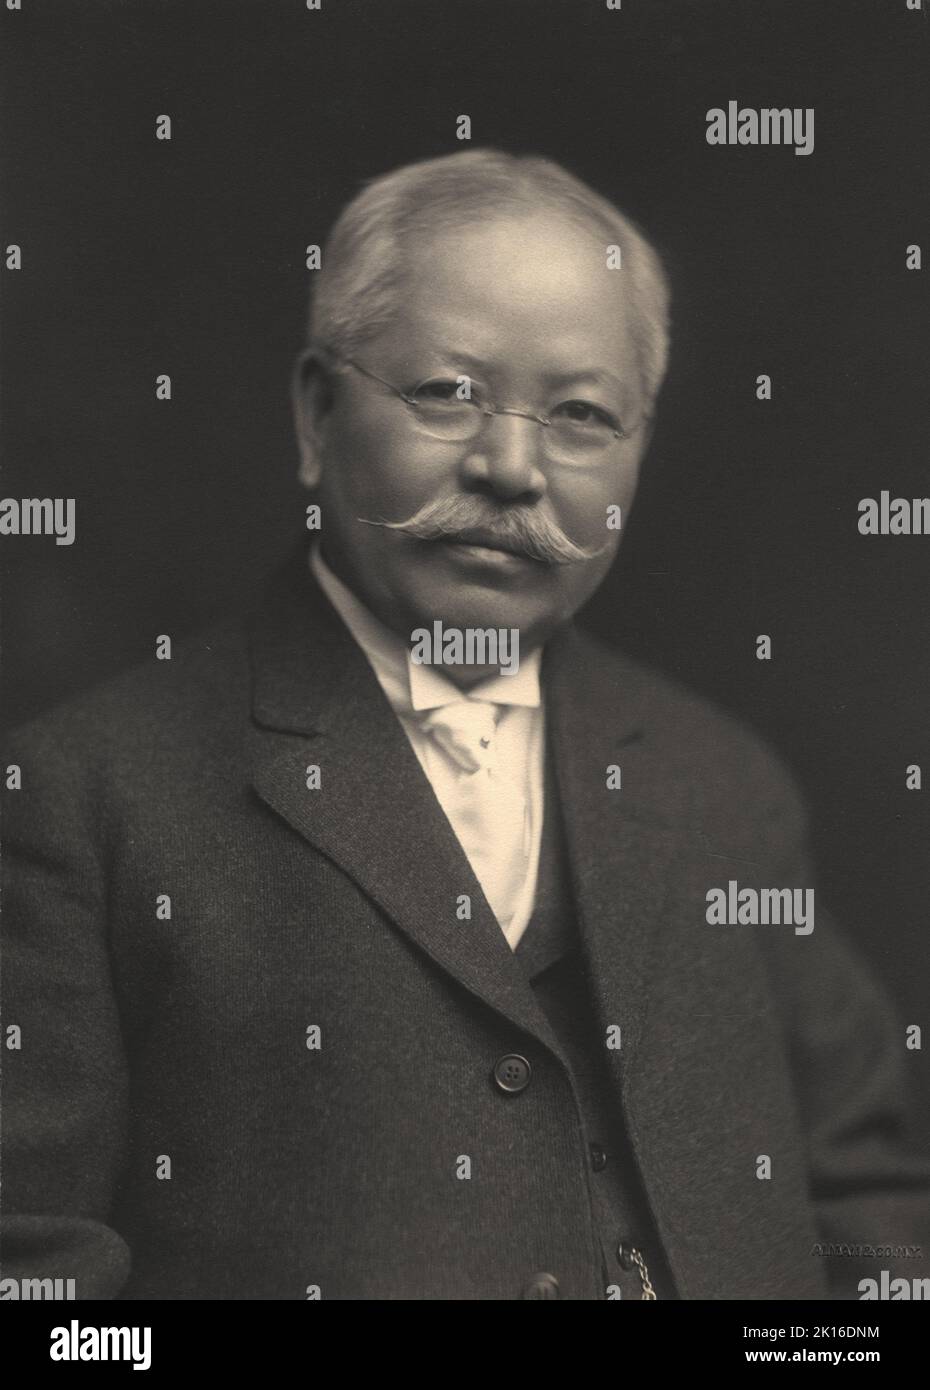 Porträt des japanischen Chemikers Takamine Jōkichi (1854-1922) c1910, der 1901 als erster Epinephrin isoliert hat. Stockfoto